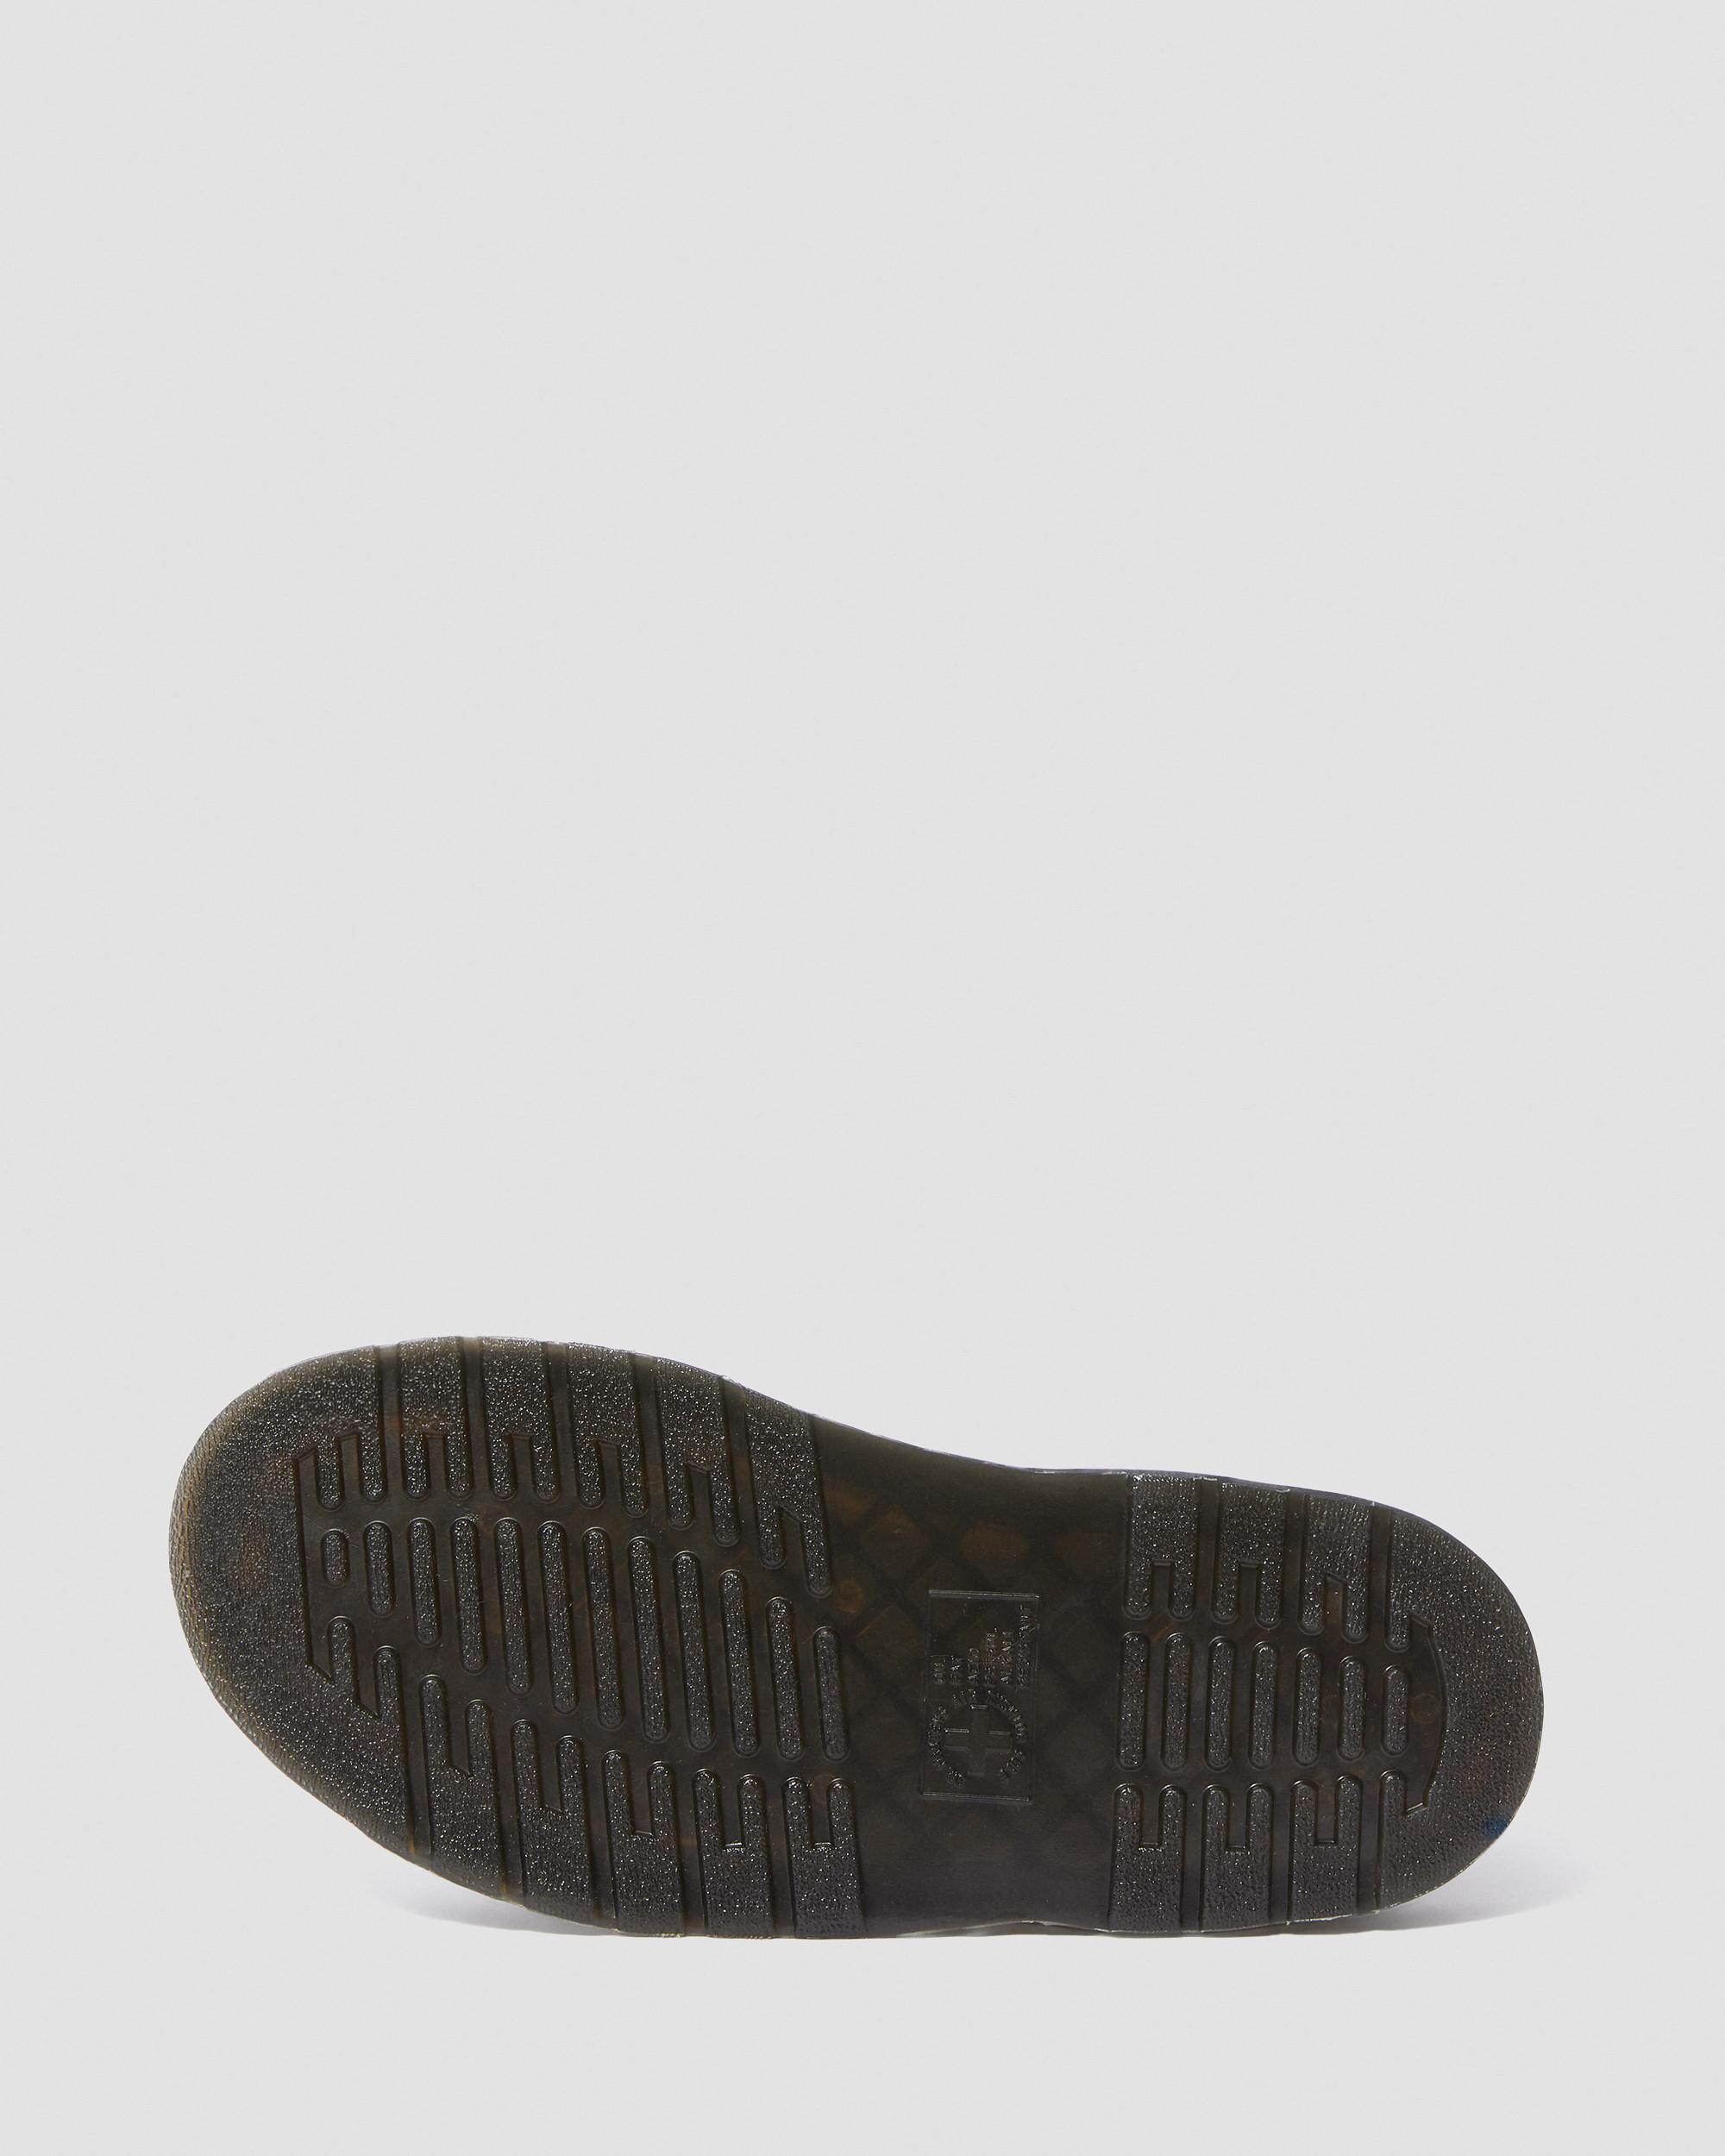 Gryphon Brando Leather Gladiator Sandals in Black | Dr. Martens